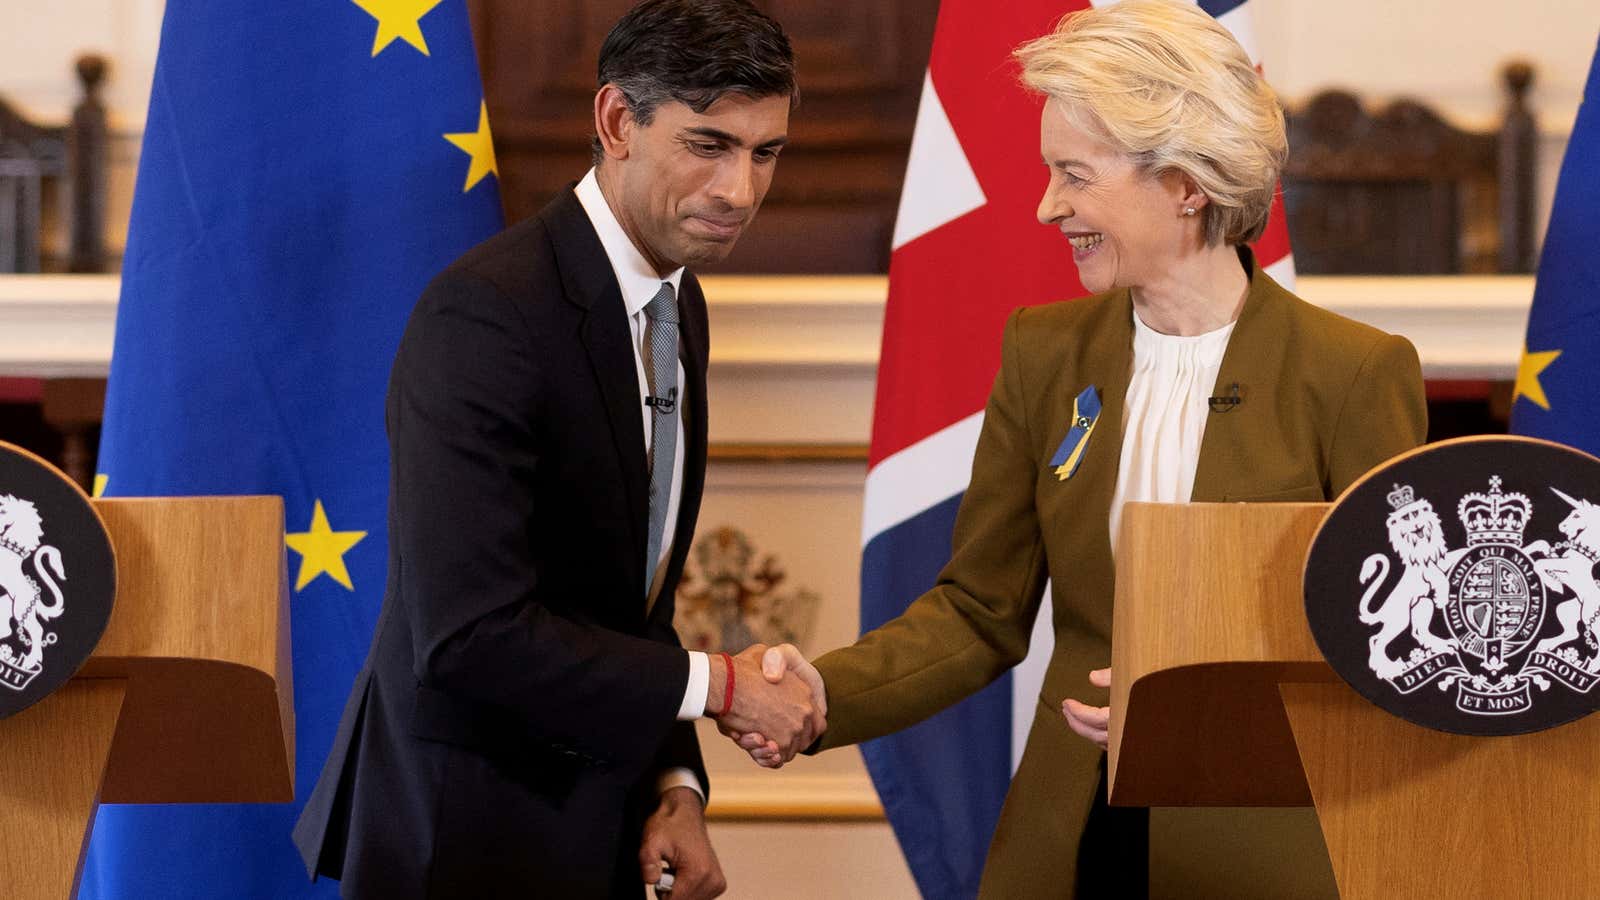 Sunak announced the agreement with Ursula von der Leyen, the EU president.